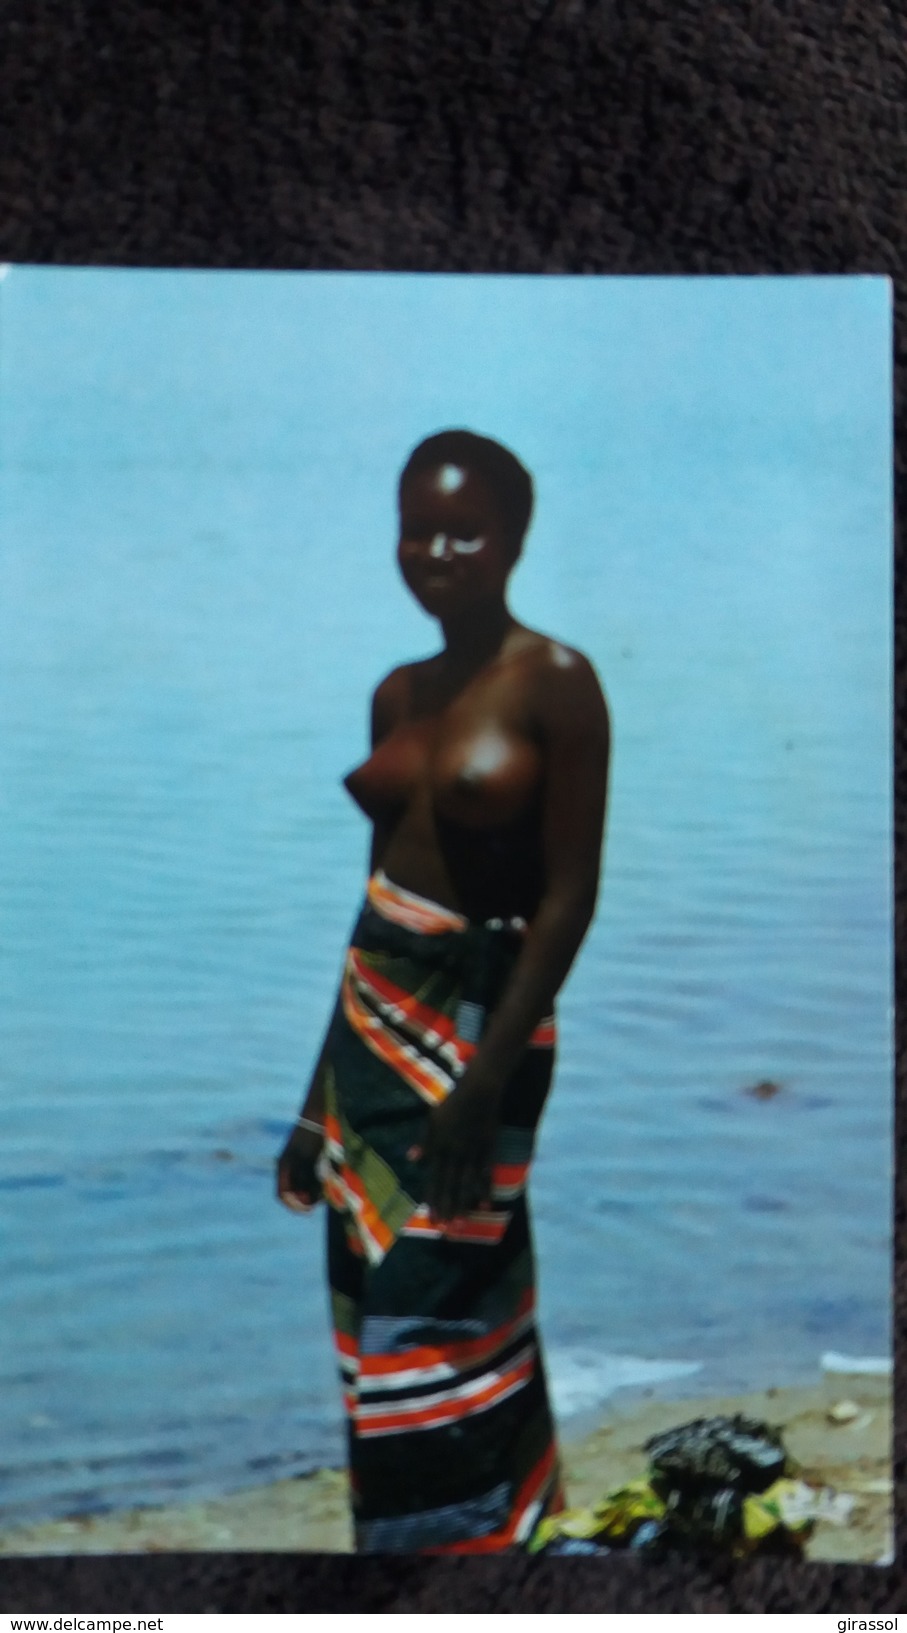 CPSM AFRIQUE EN COUEURS RENCONTRE JEUNE FEMME SEINS NUS AU BORD DU MARIGOT 7359 1984 IRIS - Non Classés